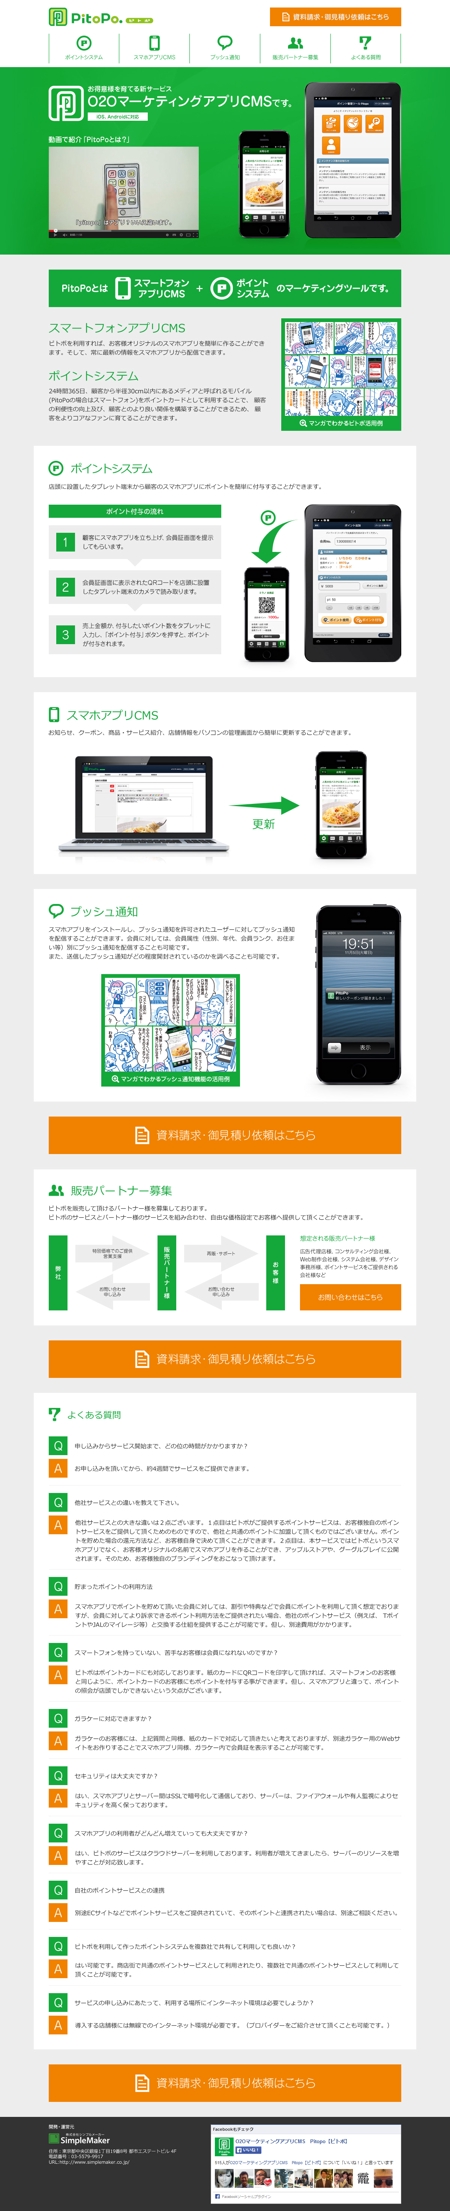 川北雅輝 (oyu717)さんのサービス紹介サイトWebデザインのみへの提案